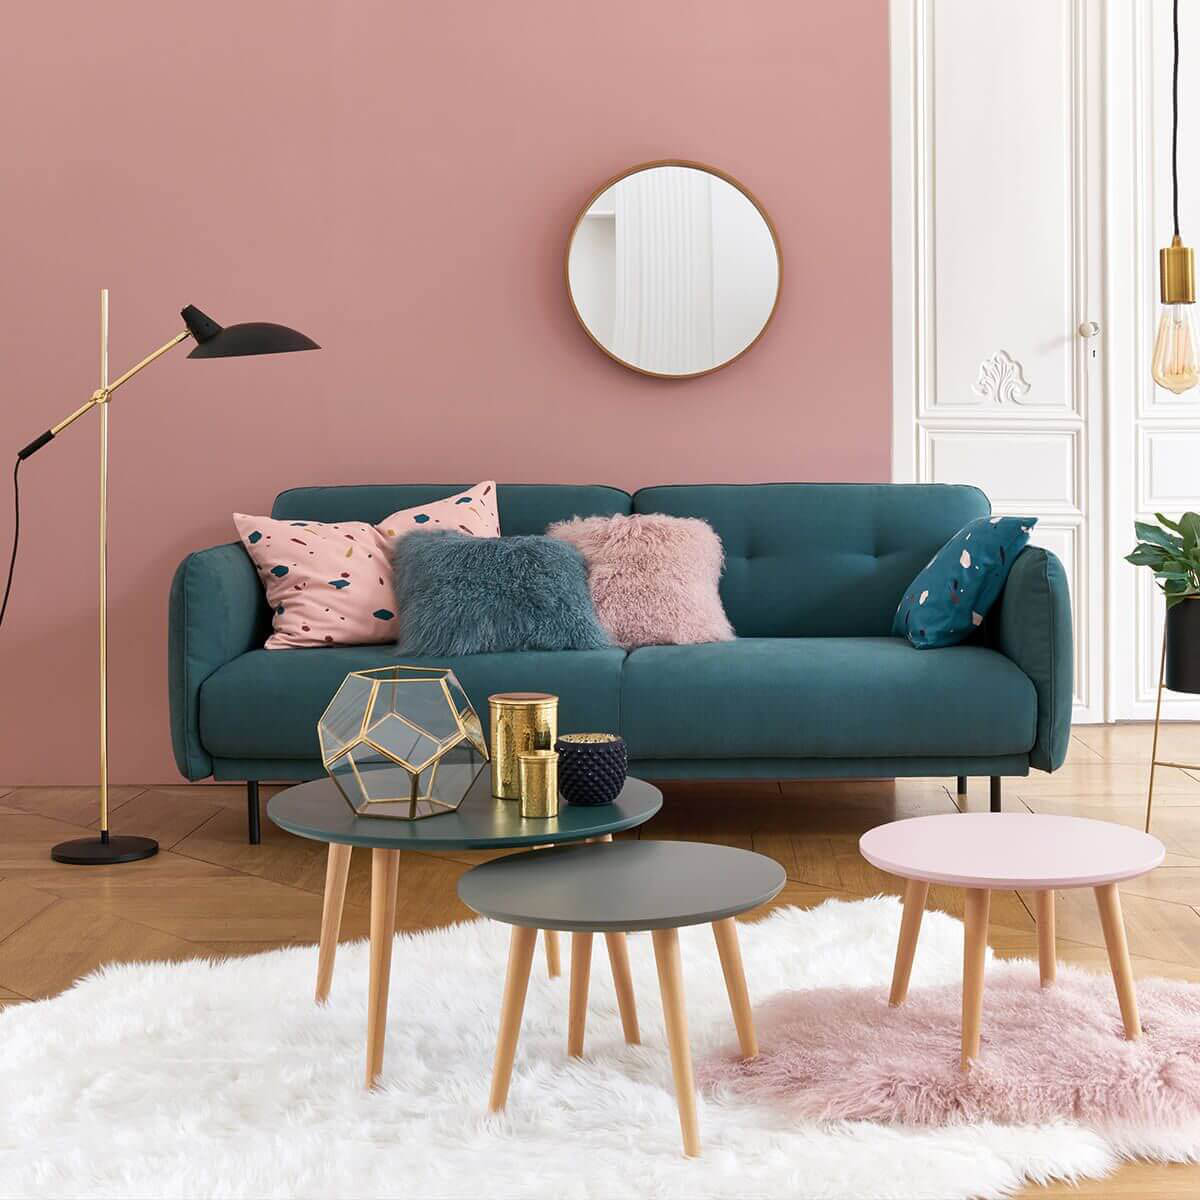 ý tưởng phối hợp trang trí phòng khách màu hồng kết hợp xanh cổ vịt hiện đại